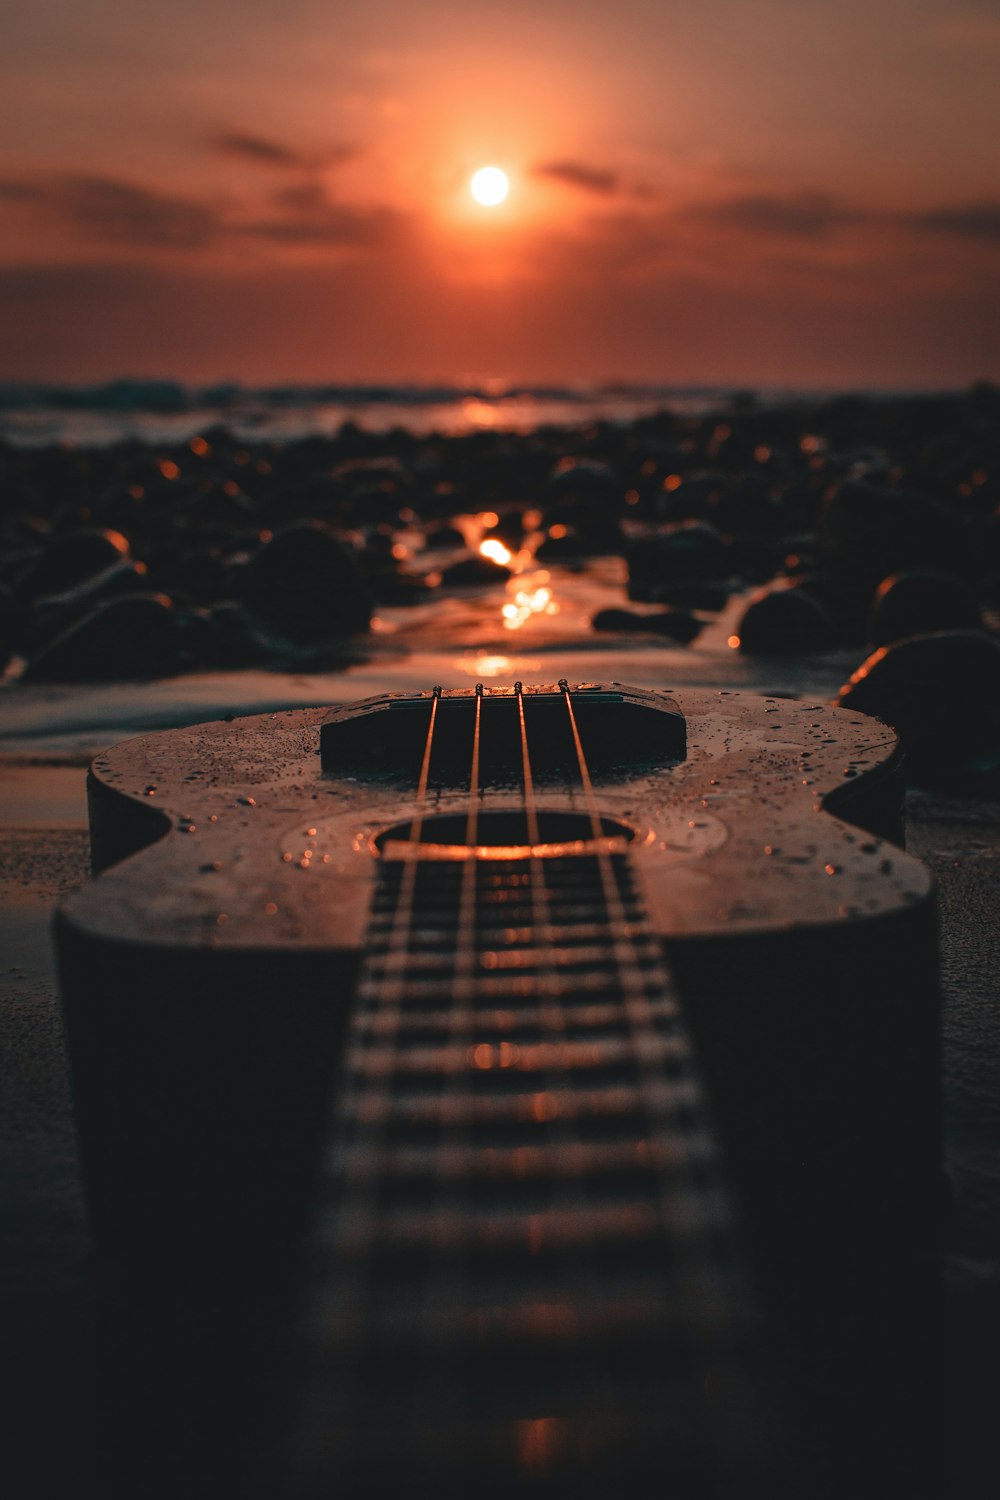 guitarra acústica marrom no rock marrom durante o pôr do sol